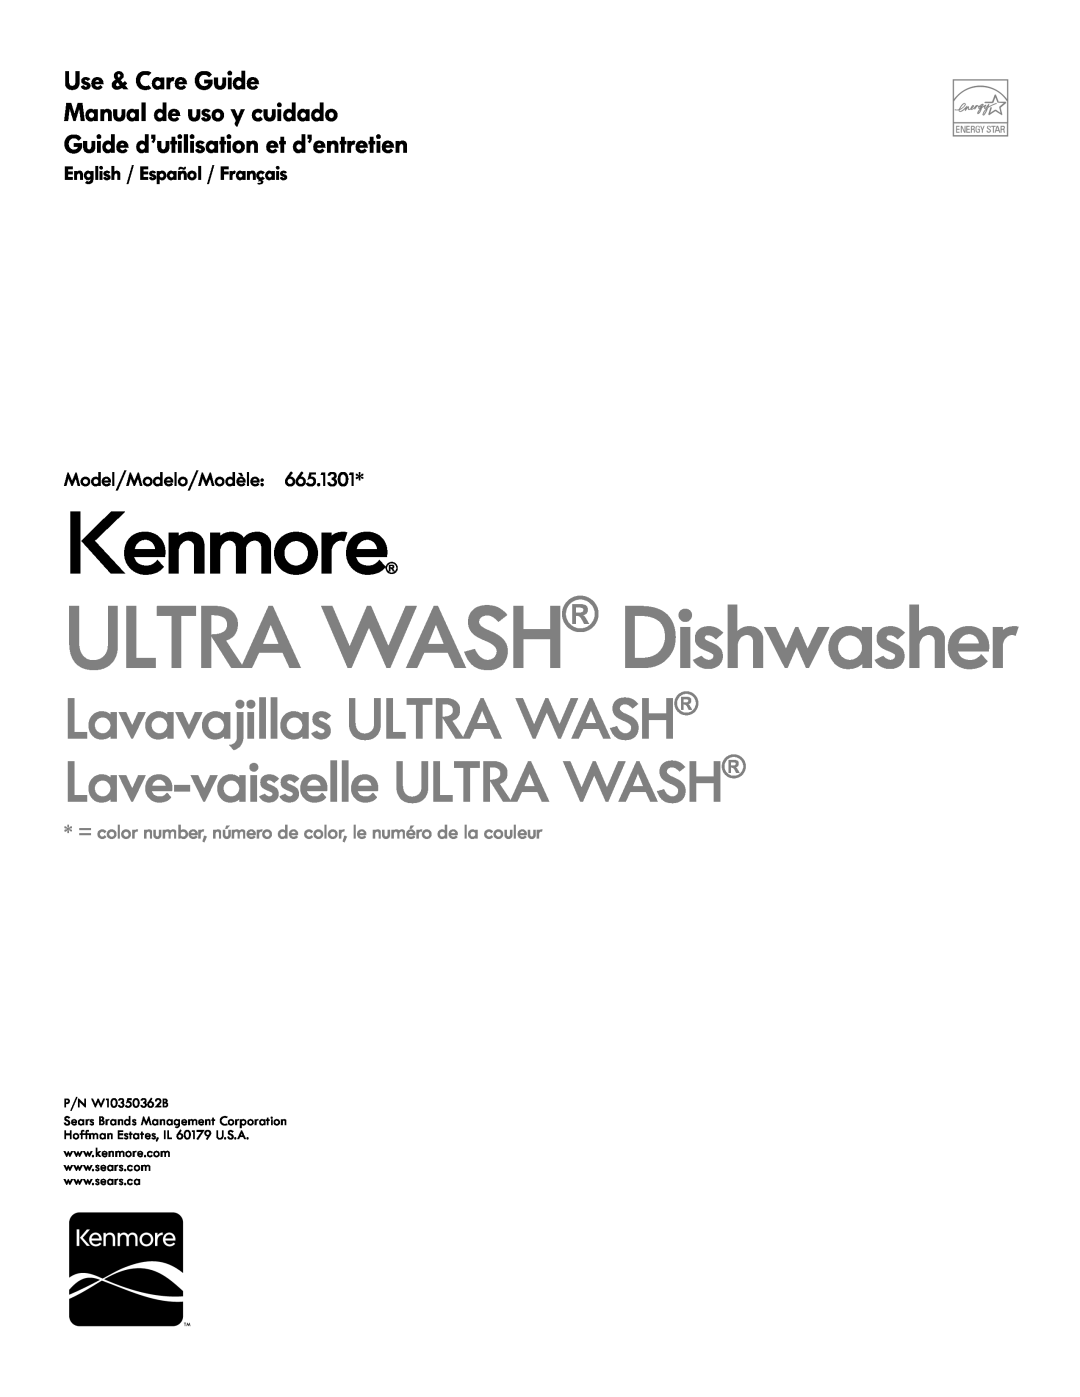 Kenmore 665.1301 manual English / Español / Français Model/Modelo/Modèle, Kenmore, ULTRA WASH Dishwasher, P/N W10350362B 